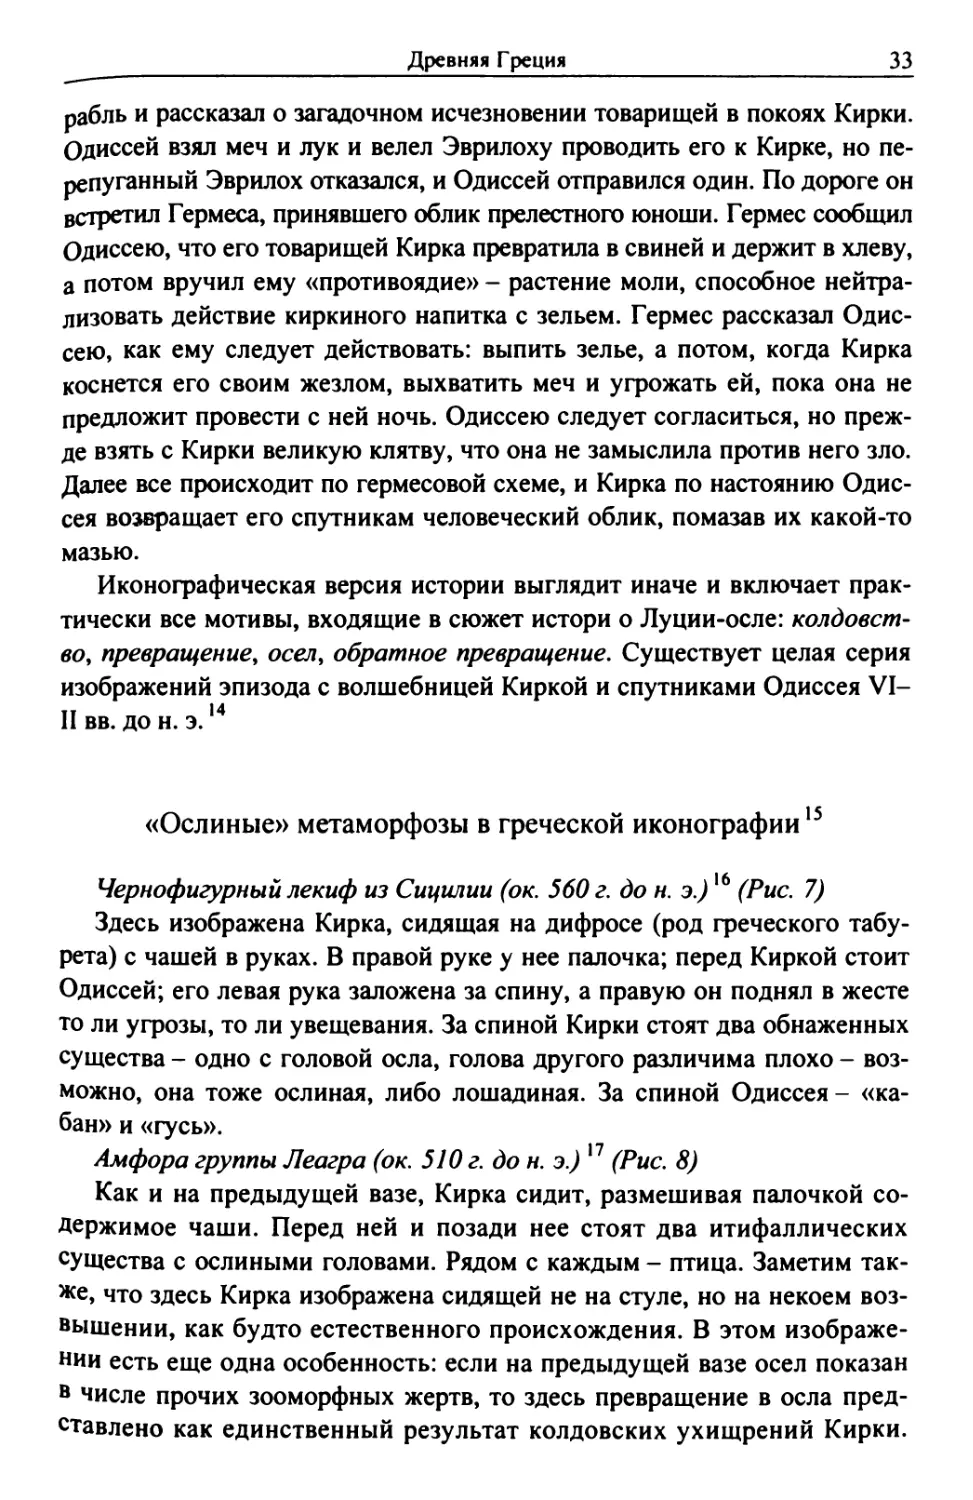 «Ослиные» метаморфозы в феческой иконографии